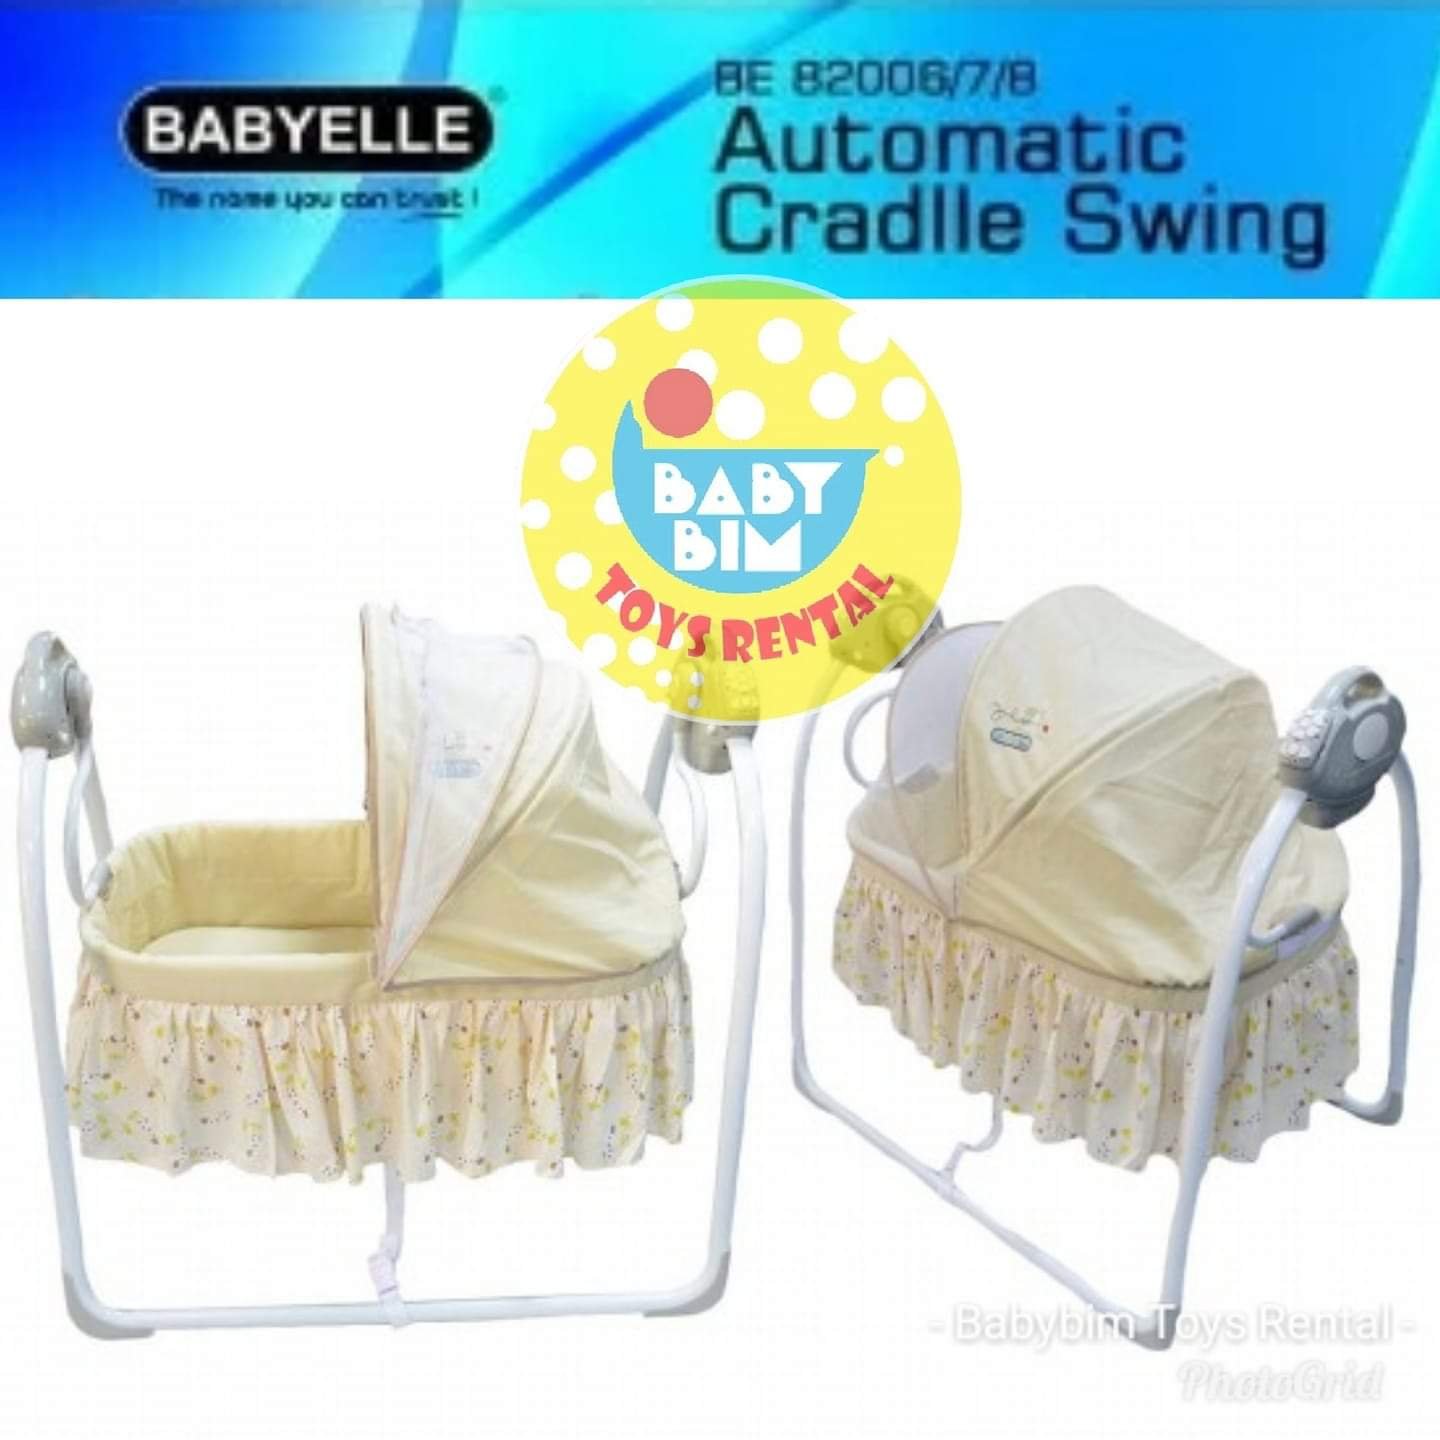 BABY SWINGER BABYELLE AUTOMATIC CRADLE SWING (BEIGE)